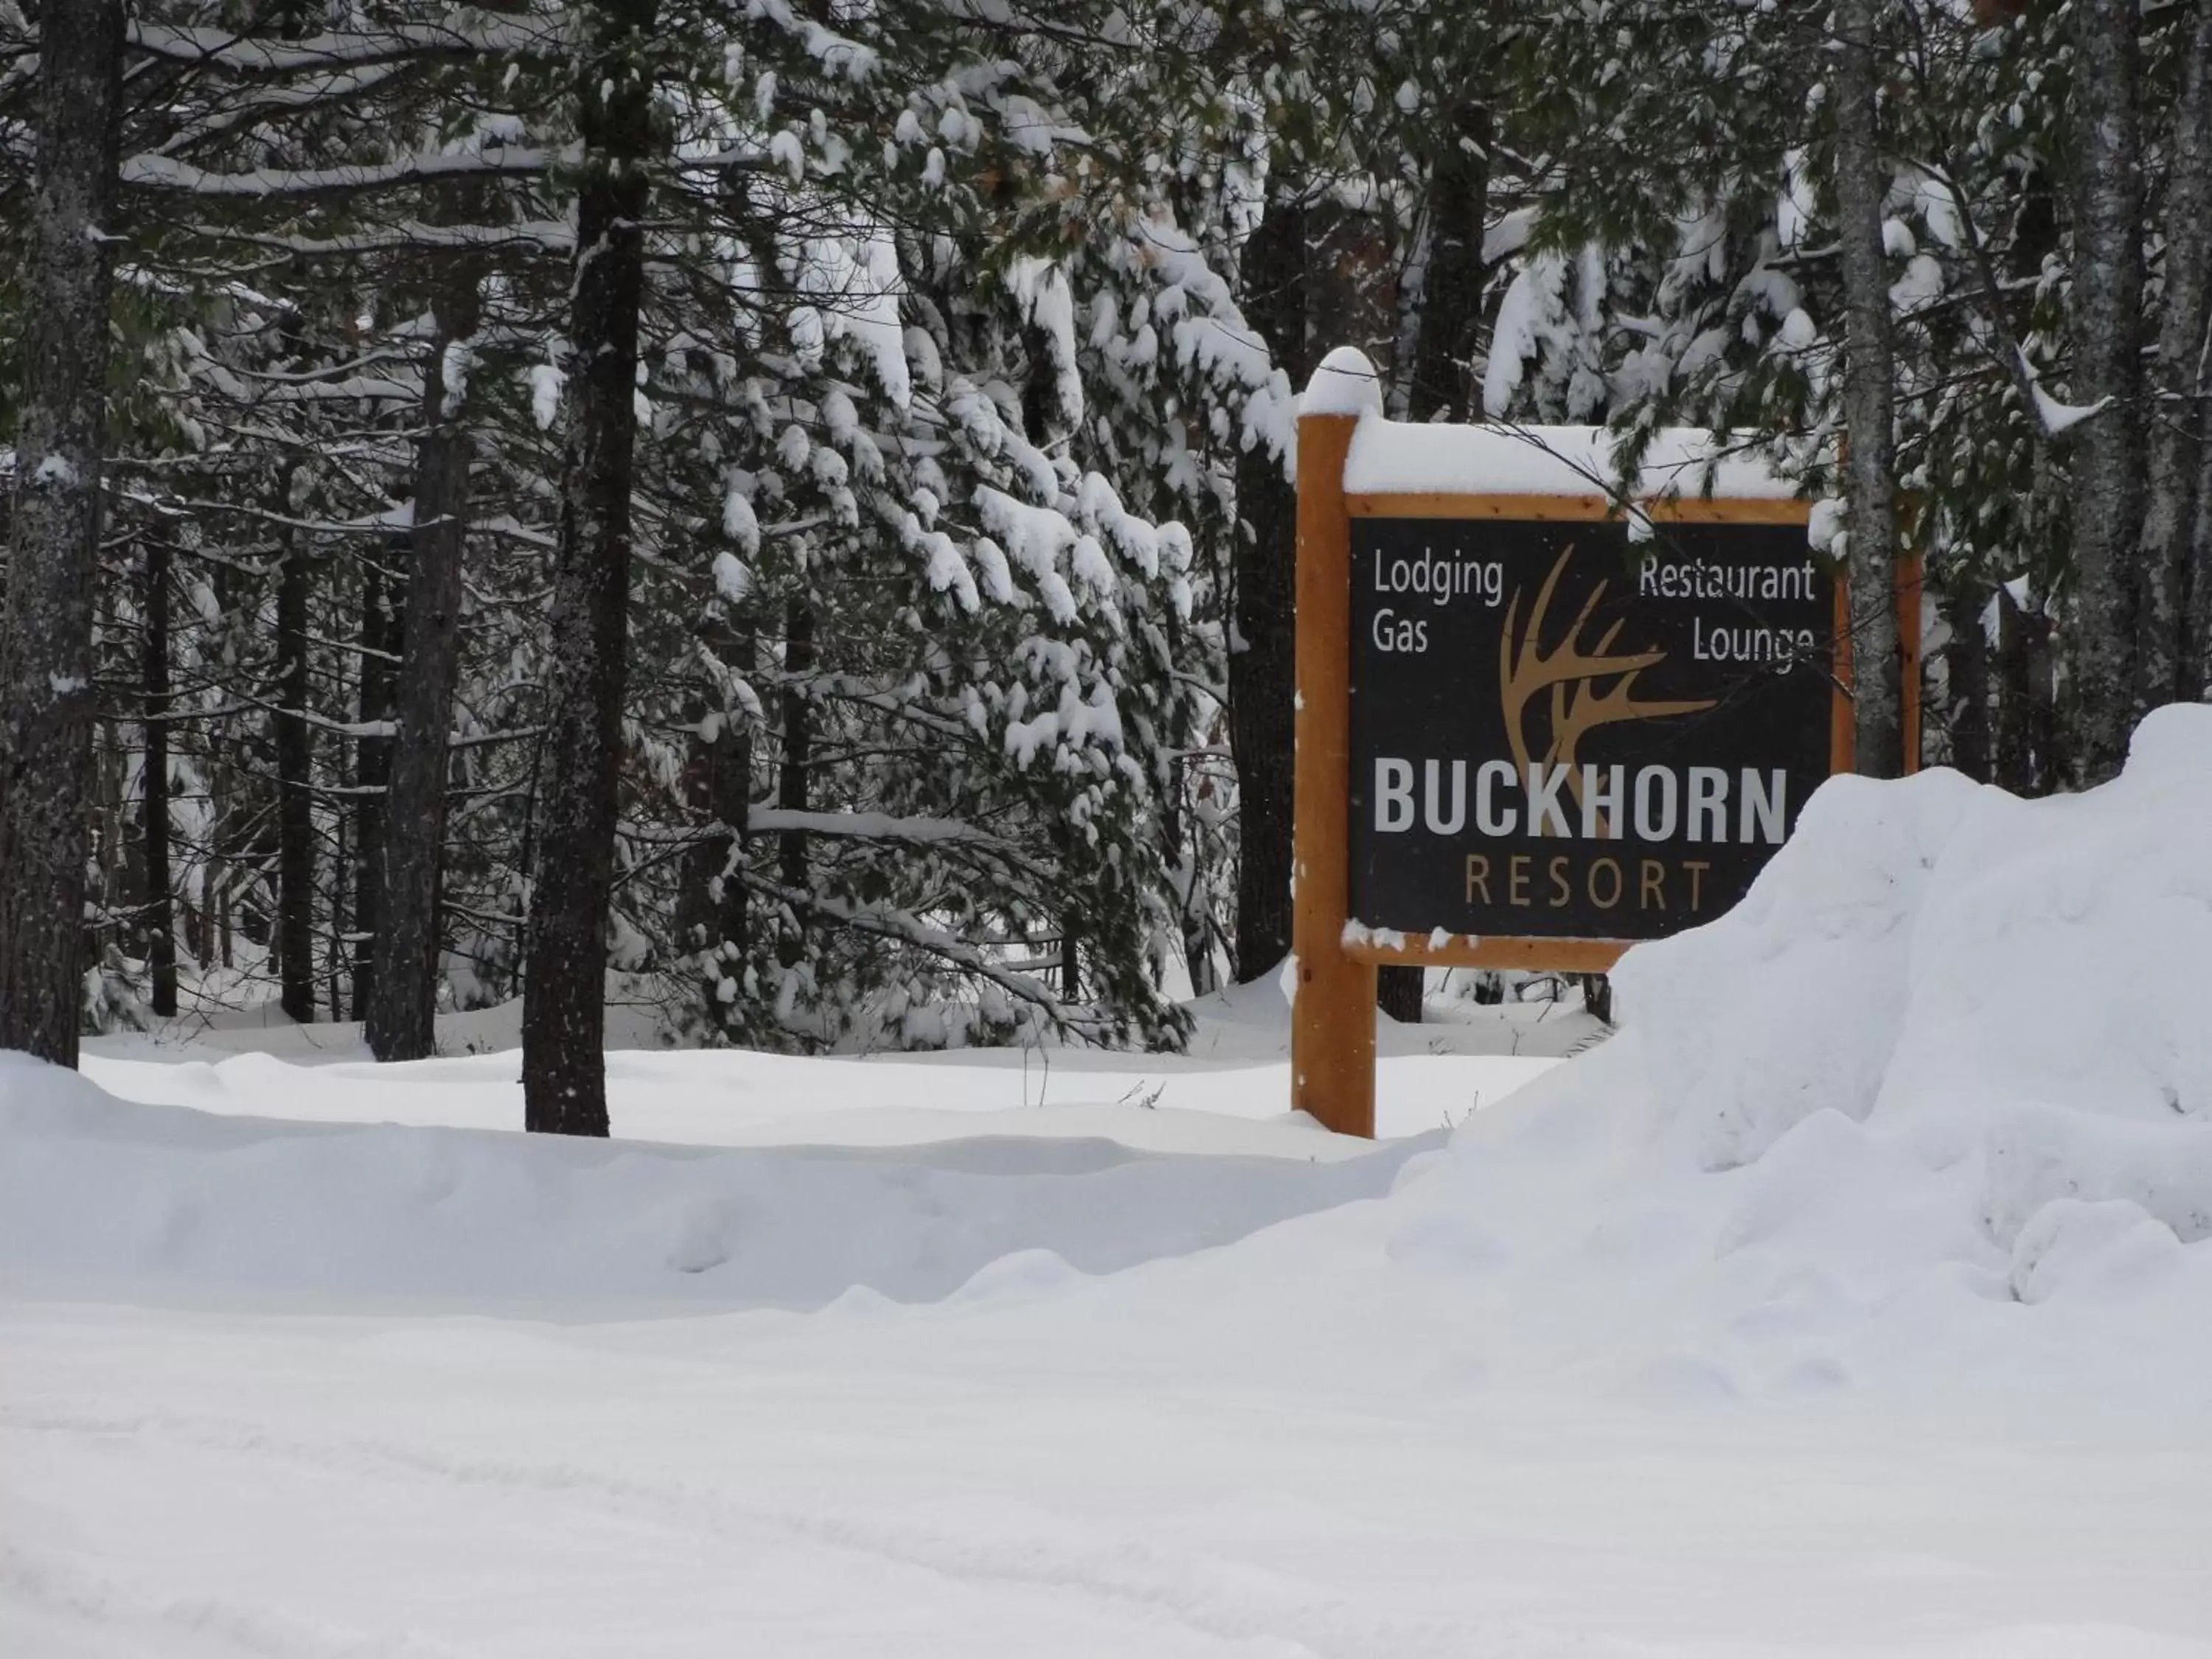 Day, Winter in Buckhorn Resort